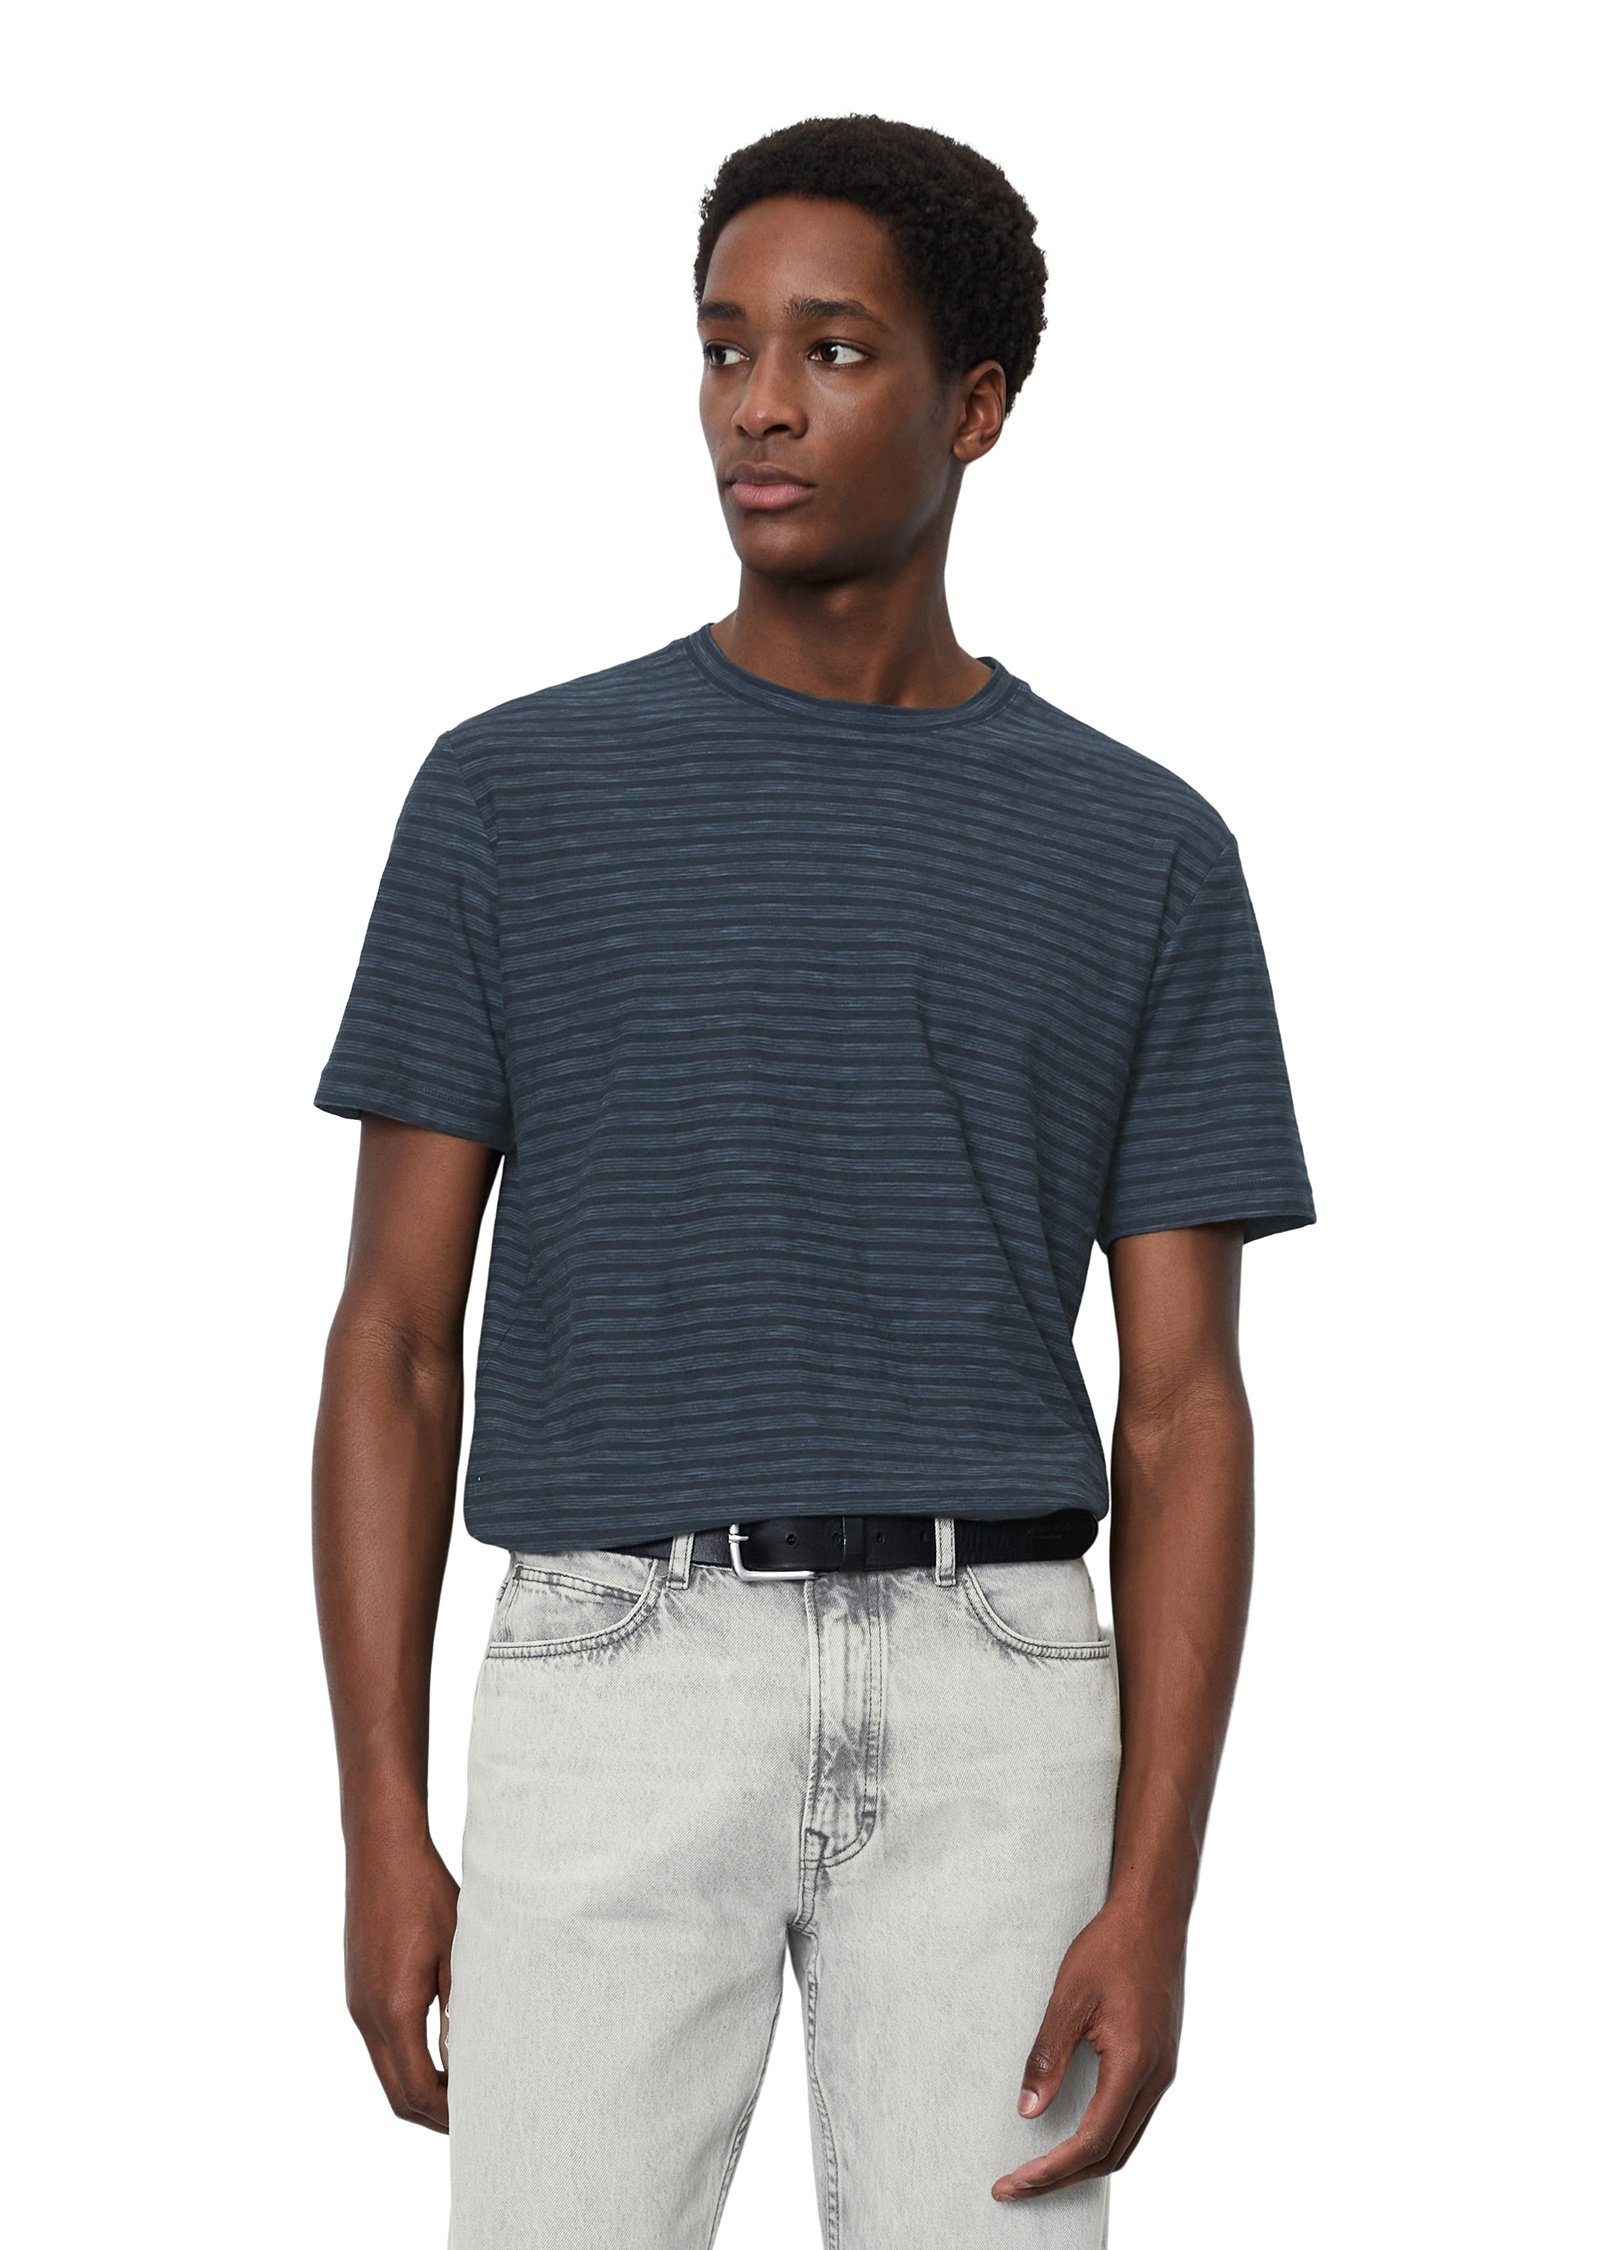 Slub-Jersey T-Shirt in softem dunkelblau Marc O'Polo